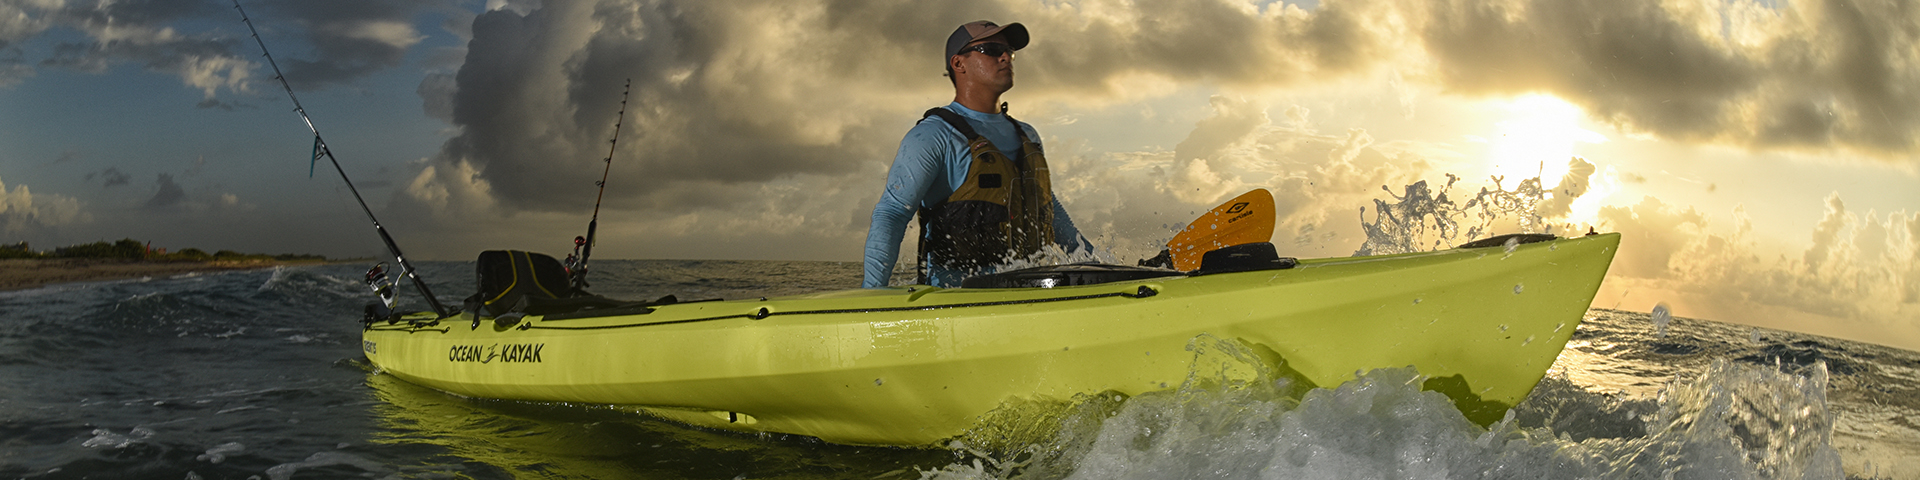 Kayaks: Trident 15 by Ocean Kayak - Image 4424